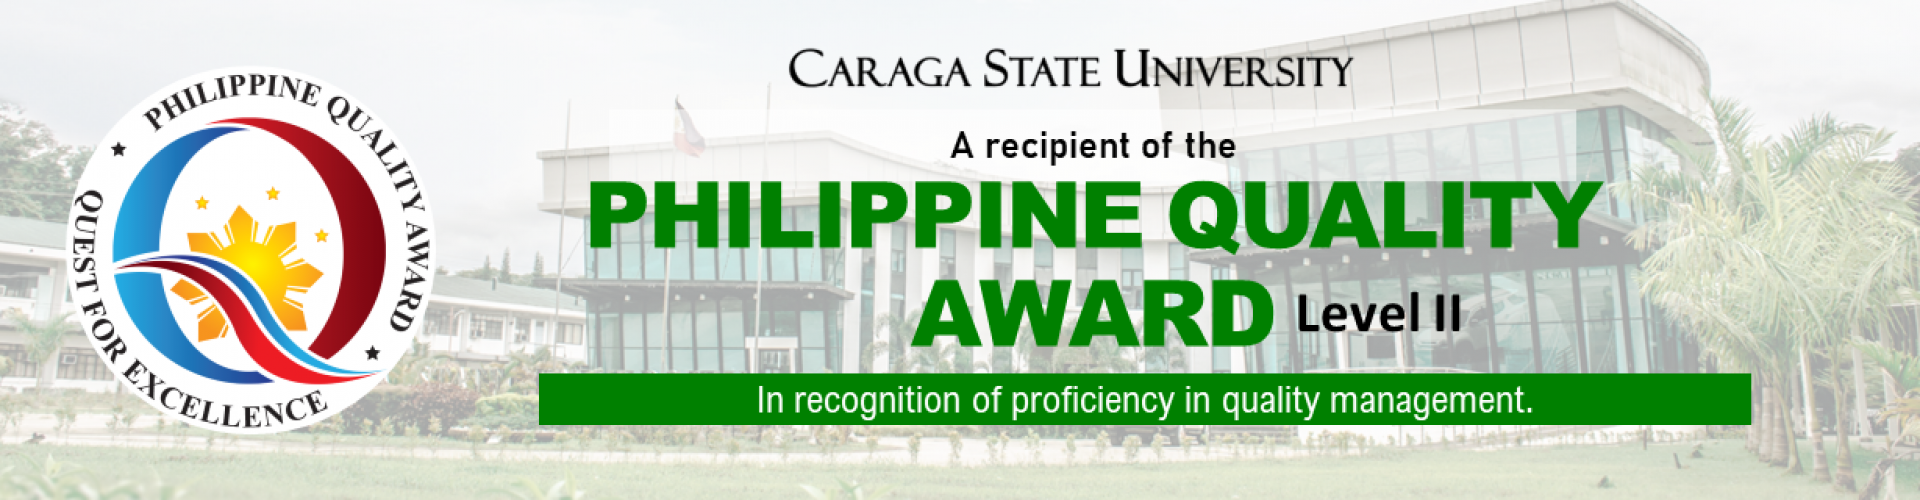 Philippine Quality Award Level II